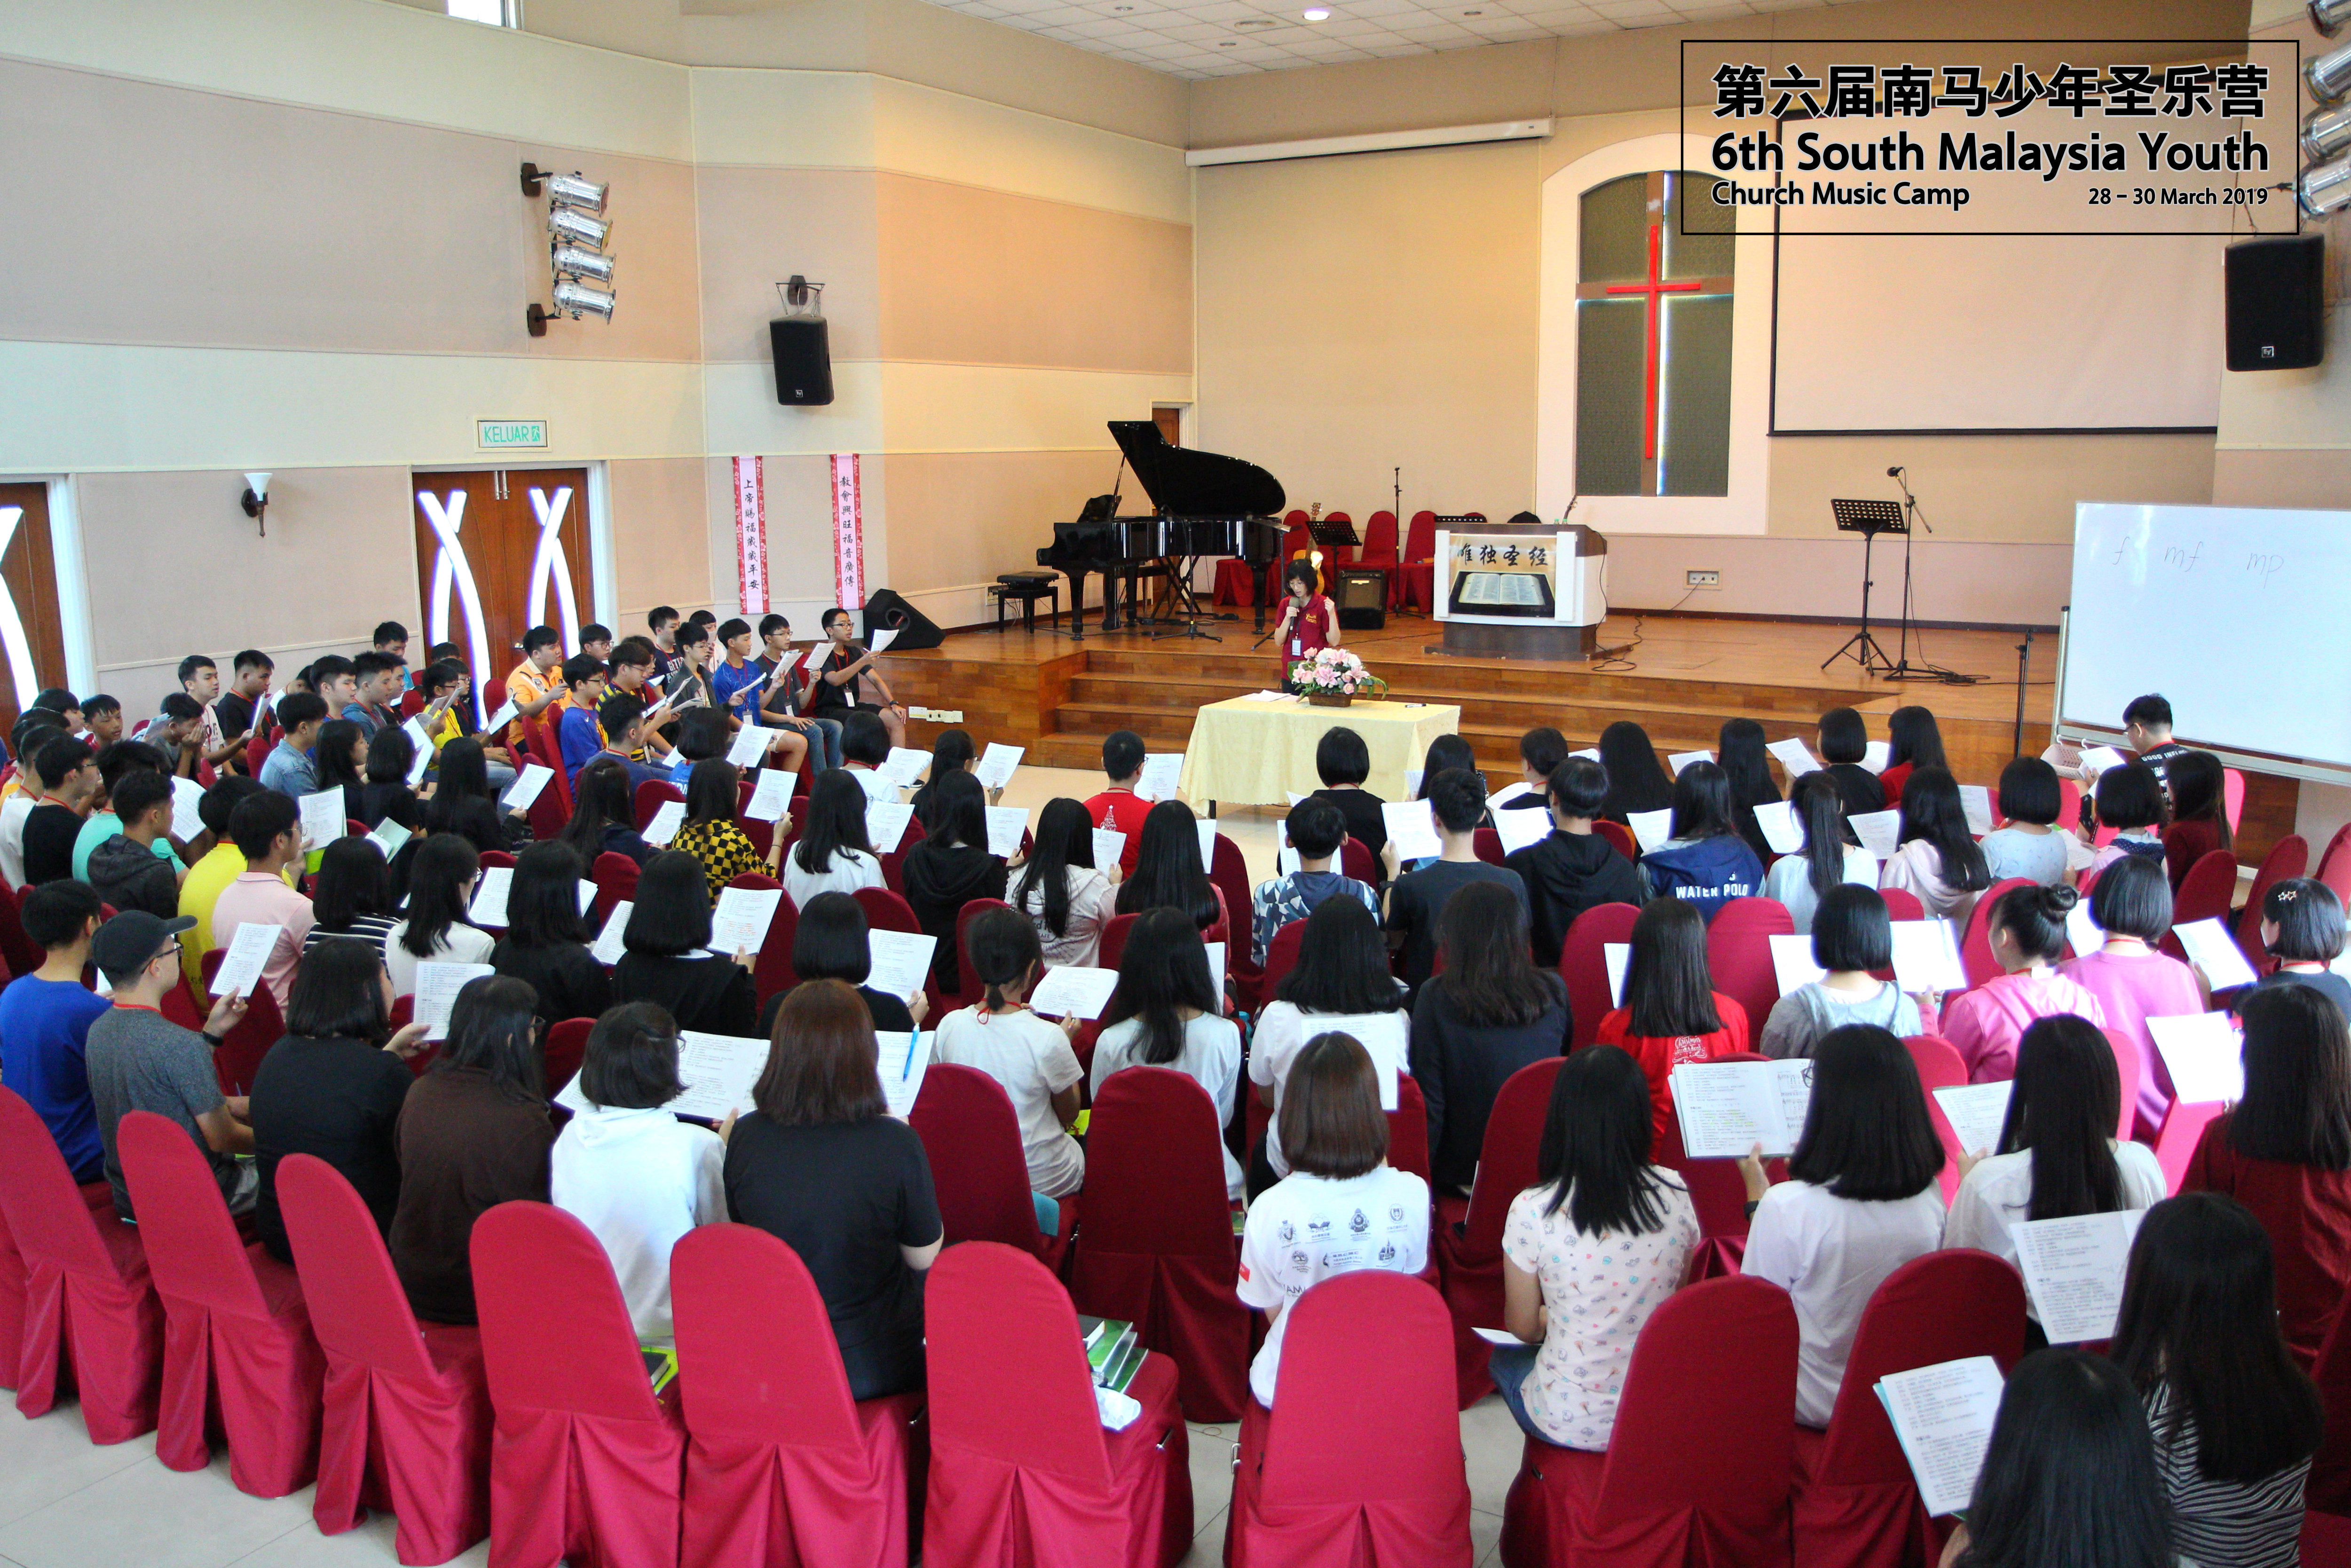 马来西亚 第六届南马少年圣乐营 6th South Malaysia Youth Church Music Camp B01-006